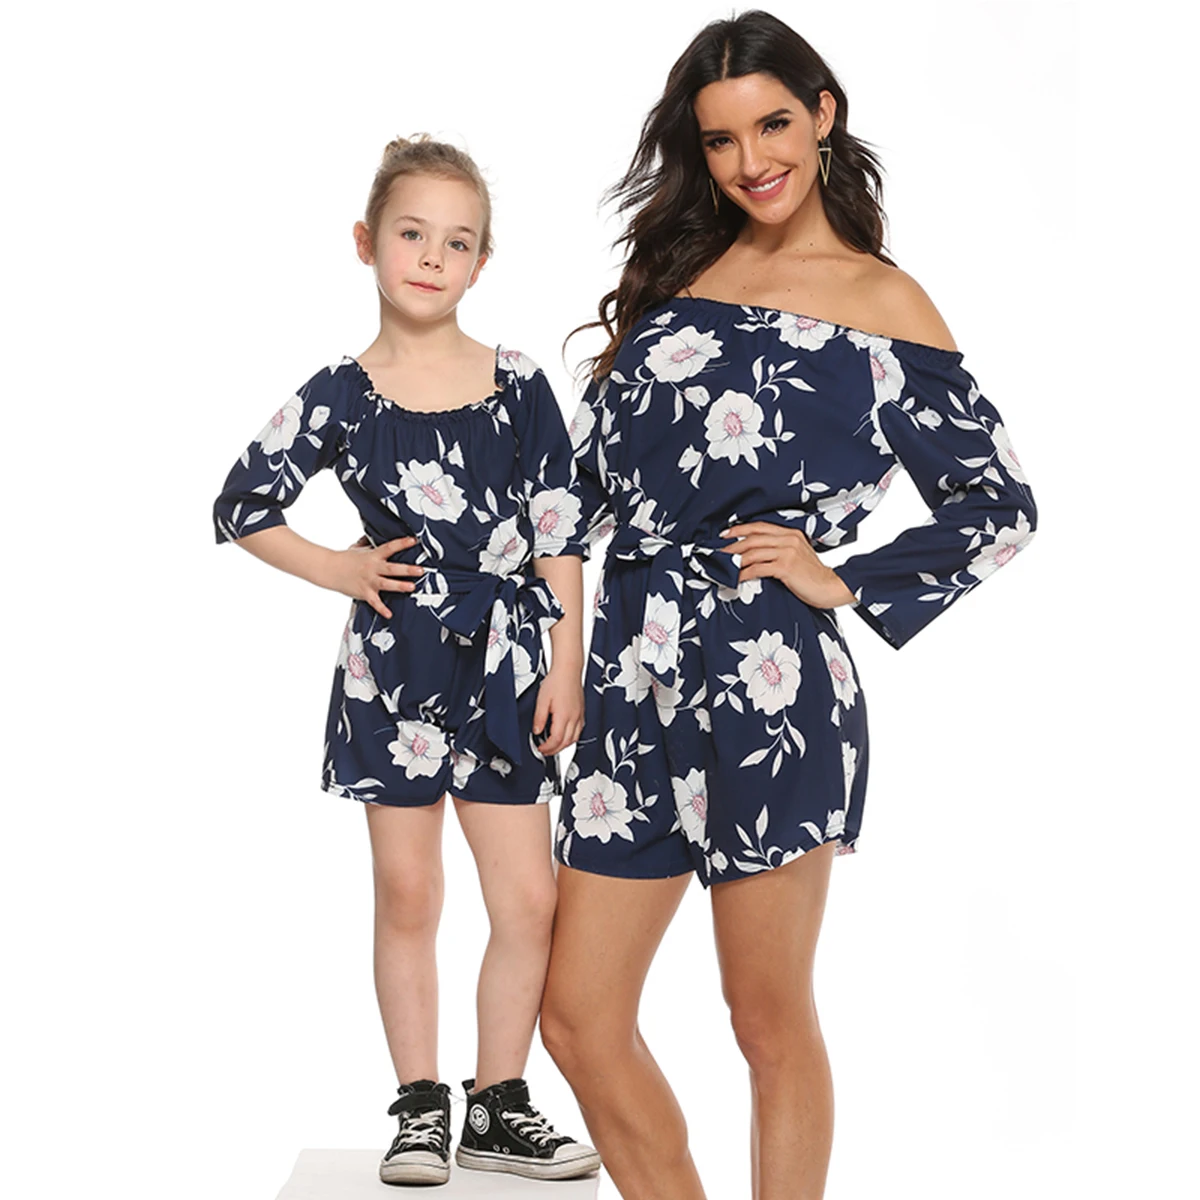 

Комплект «Mommy and Me» пояс с цветочным рисунком комбинезон семейная одежда с длинными рукавами летние комбинезоны комбинезон платье для мамы ...